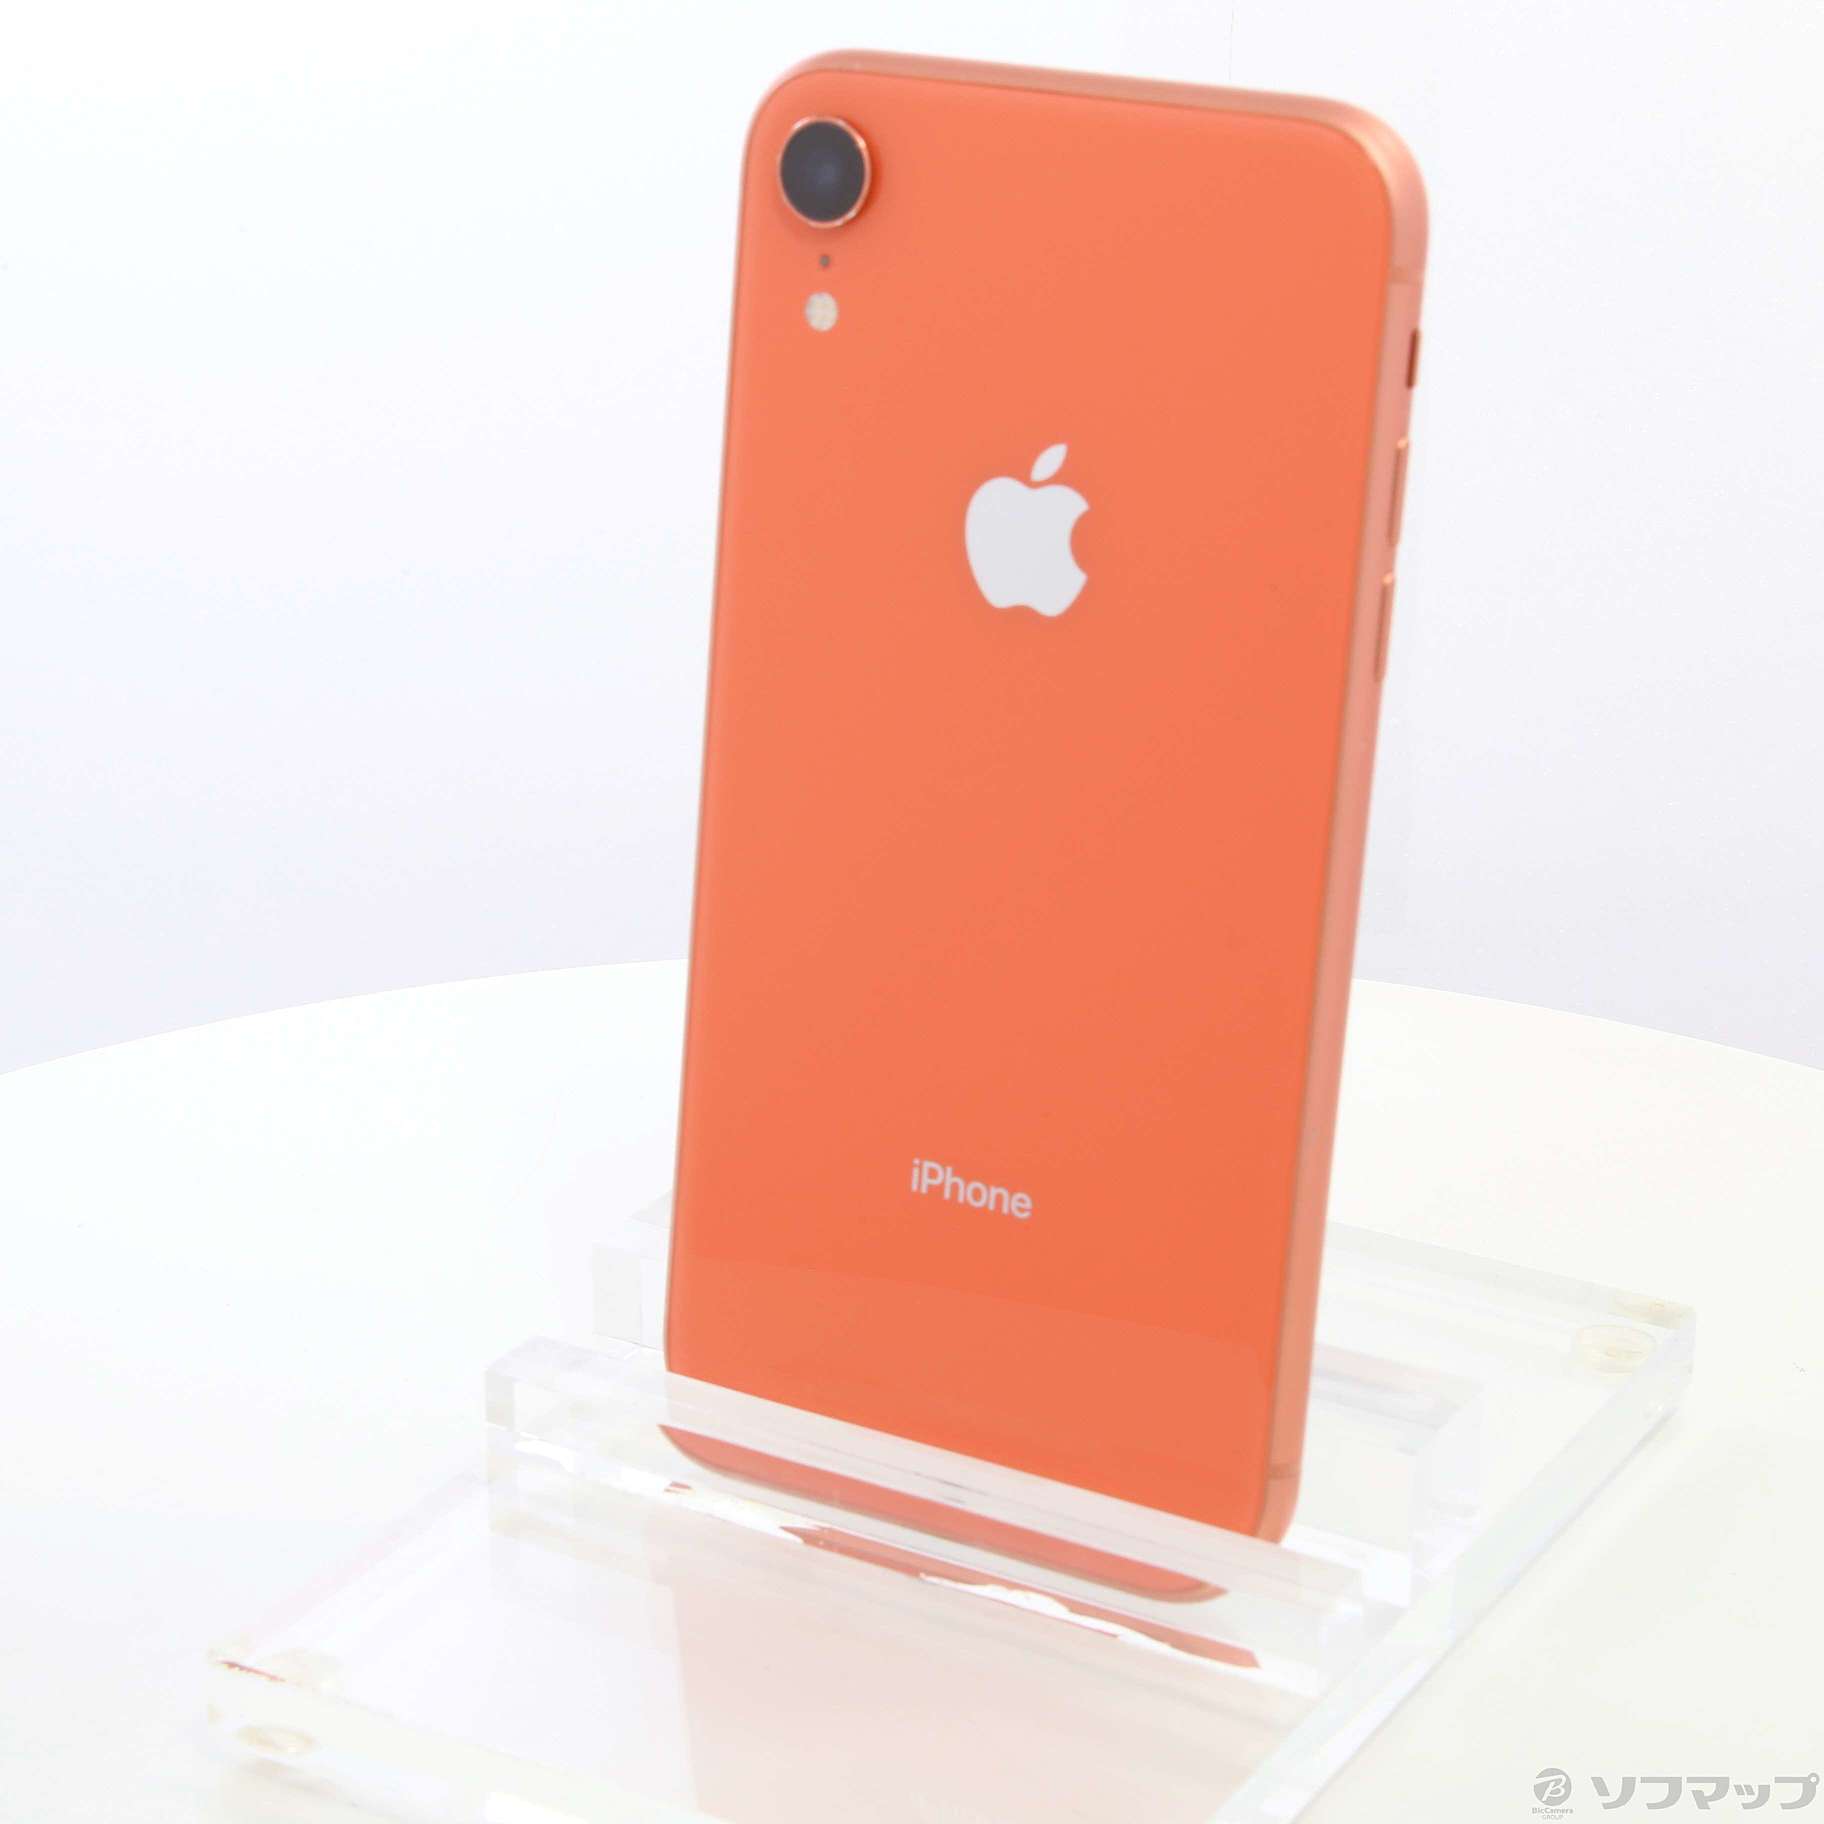 iPhone XR Coral 64 GB SIMフリー | www.dreampropertiesvalencia.com